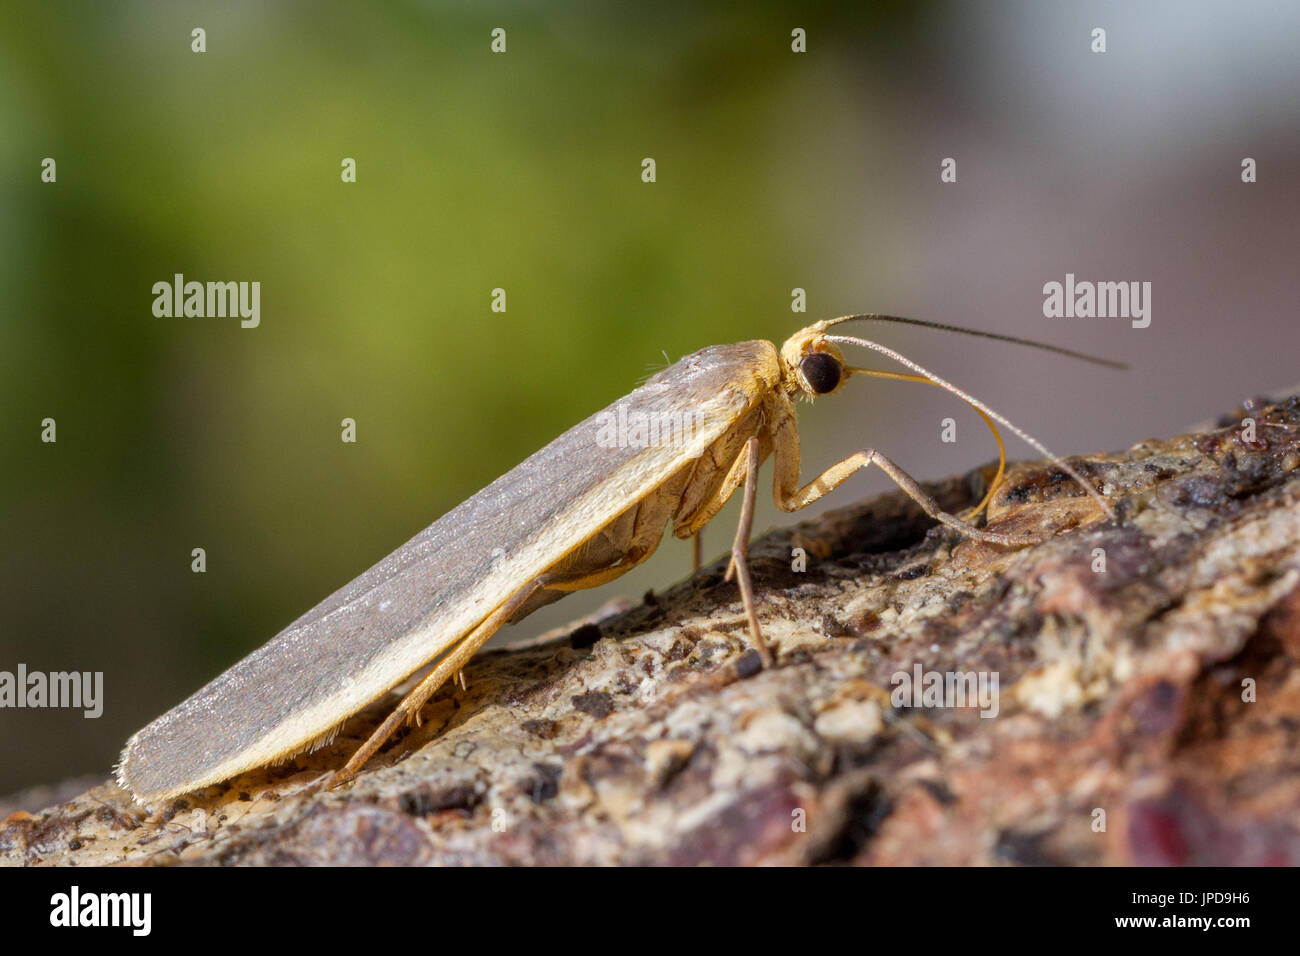 UK wildlife: common footman moth, West Yorkshire, UK Stock Photo